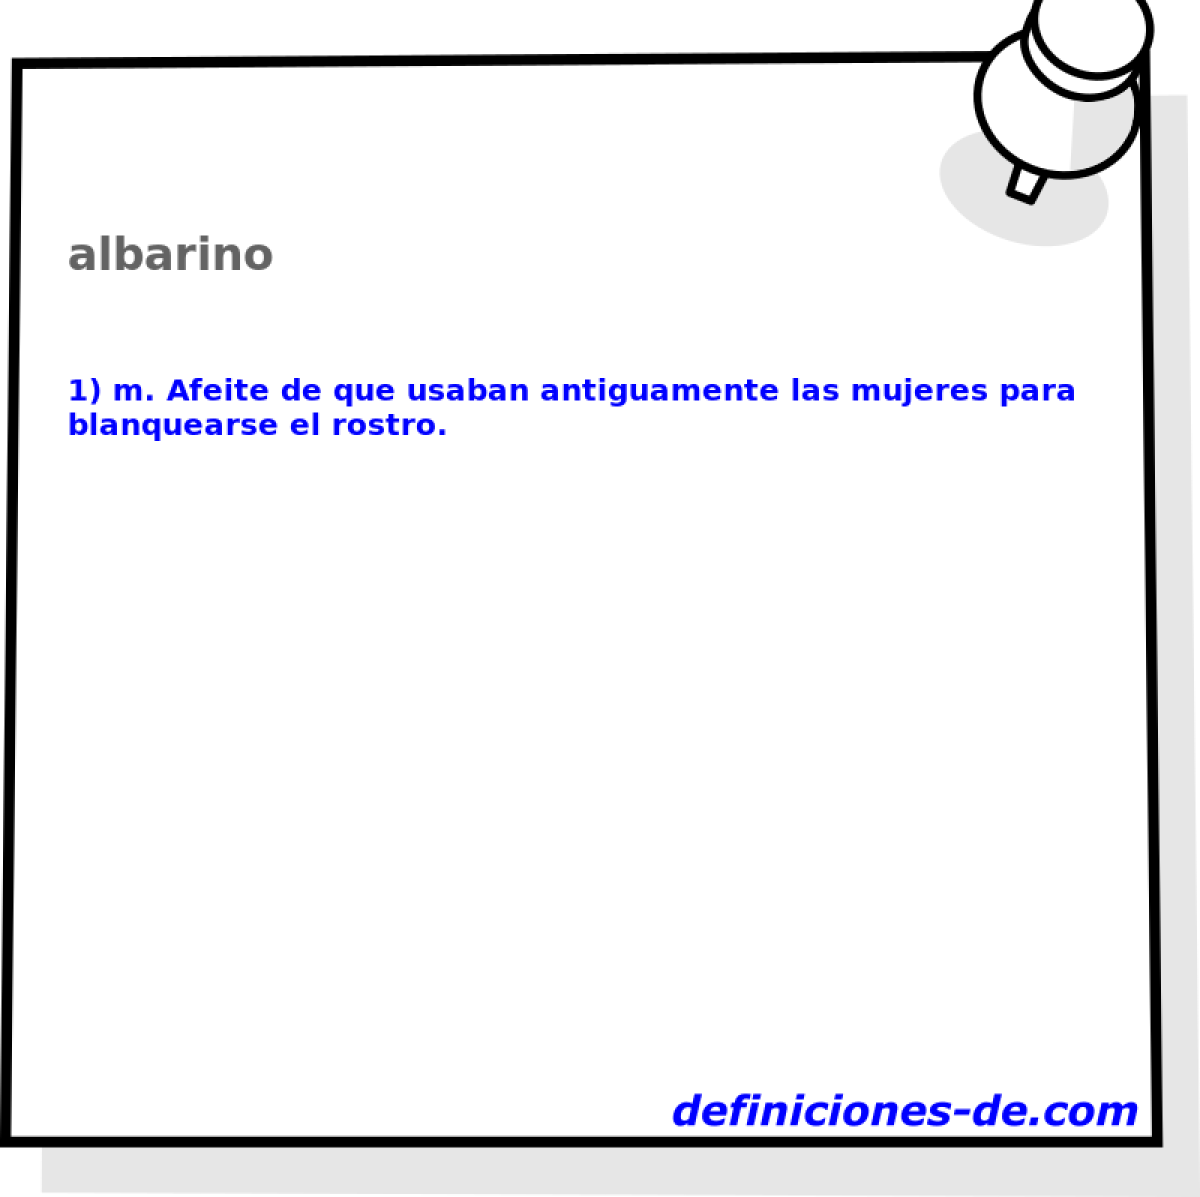 albarino 